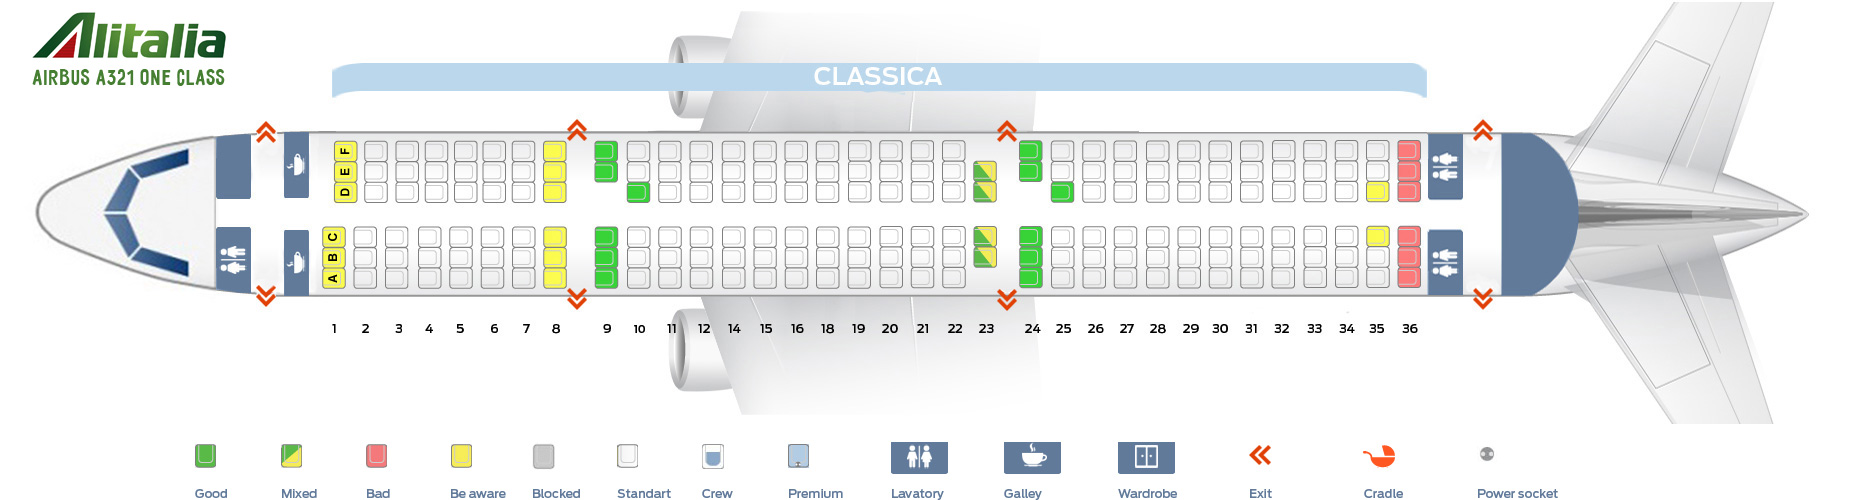 KLM Business Class Flight Review